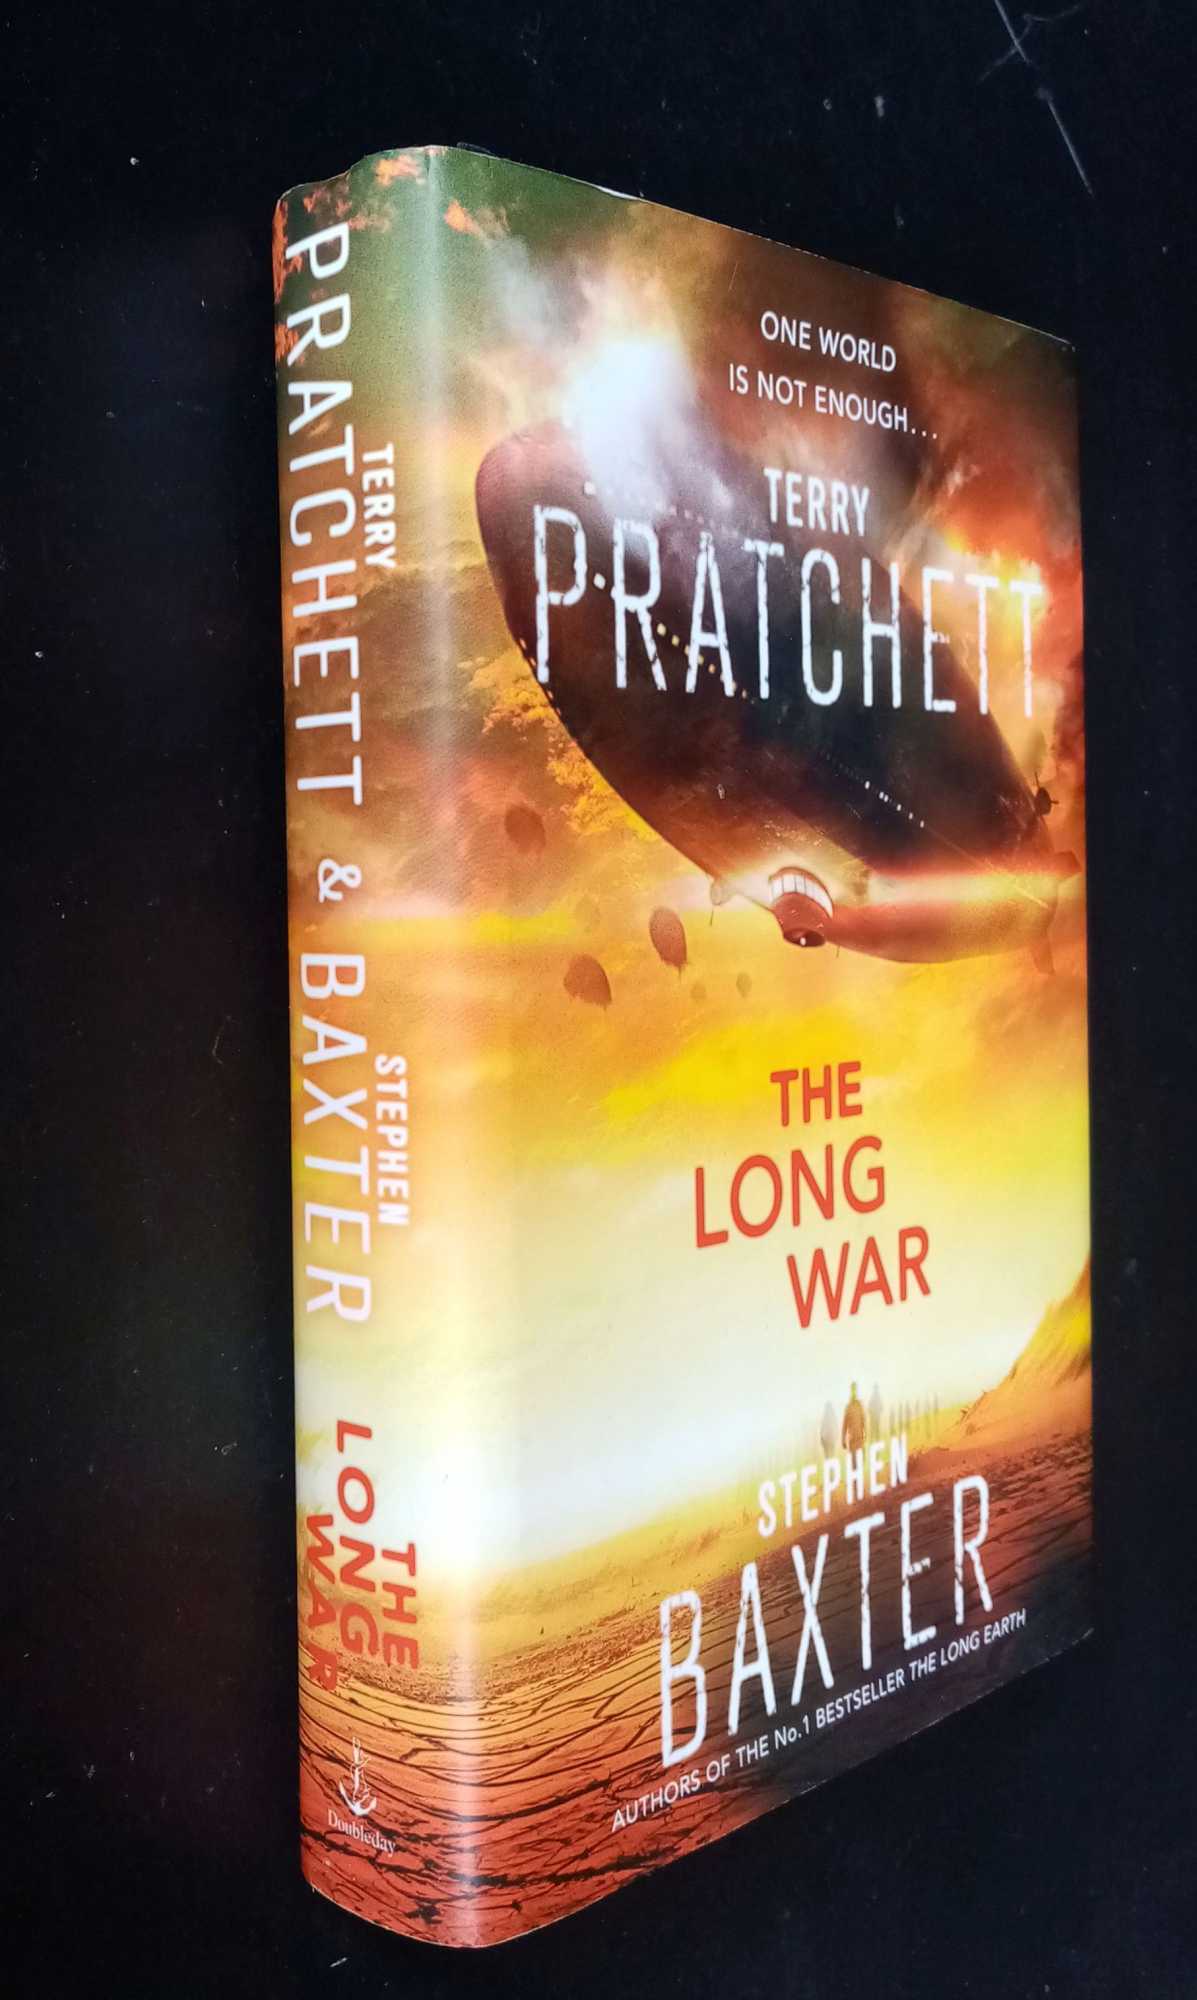 Terry Pratchett, Stephen Baxter - The Long War